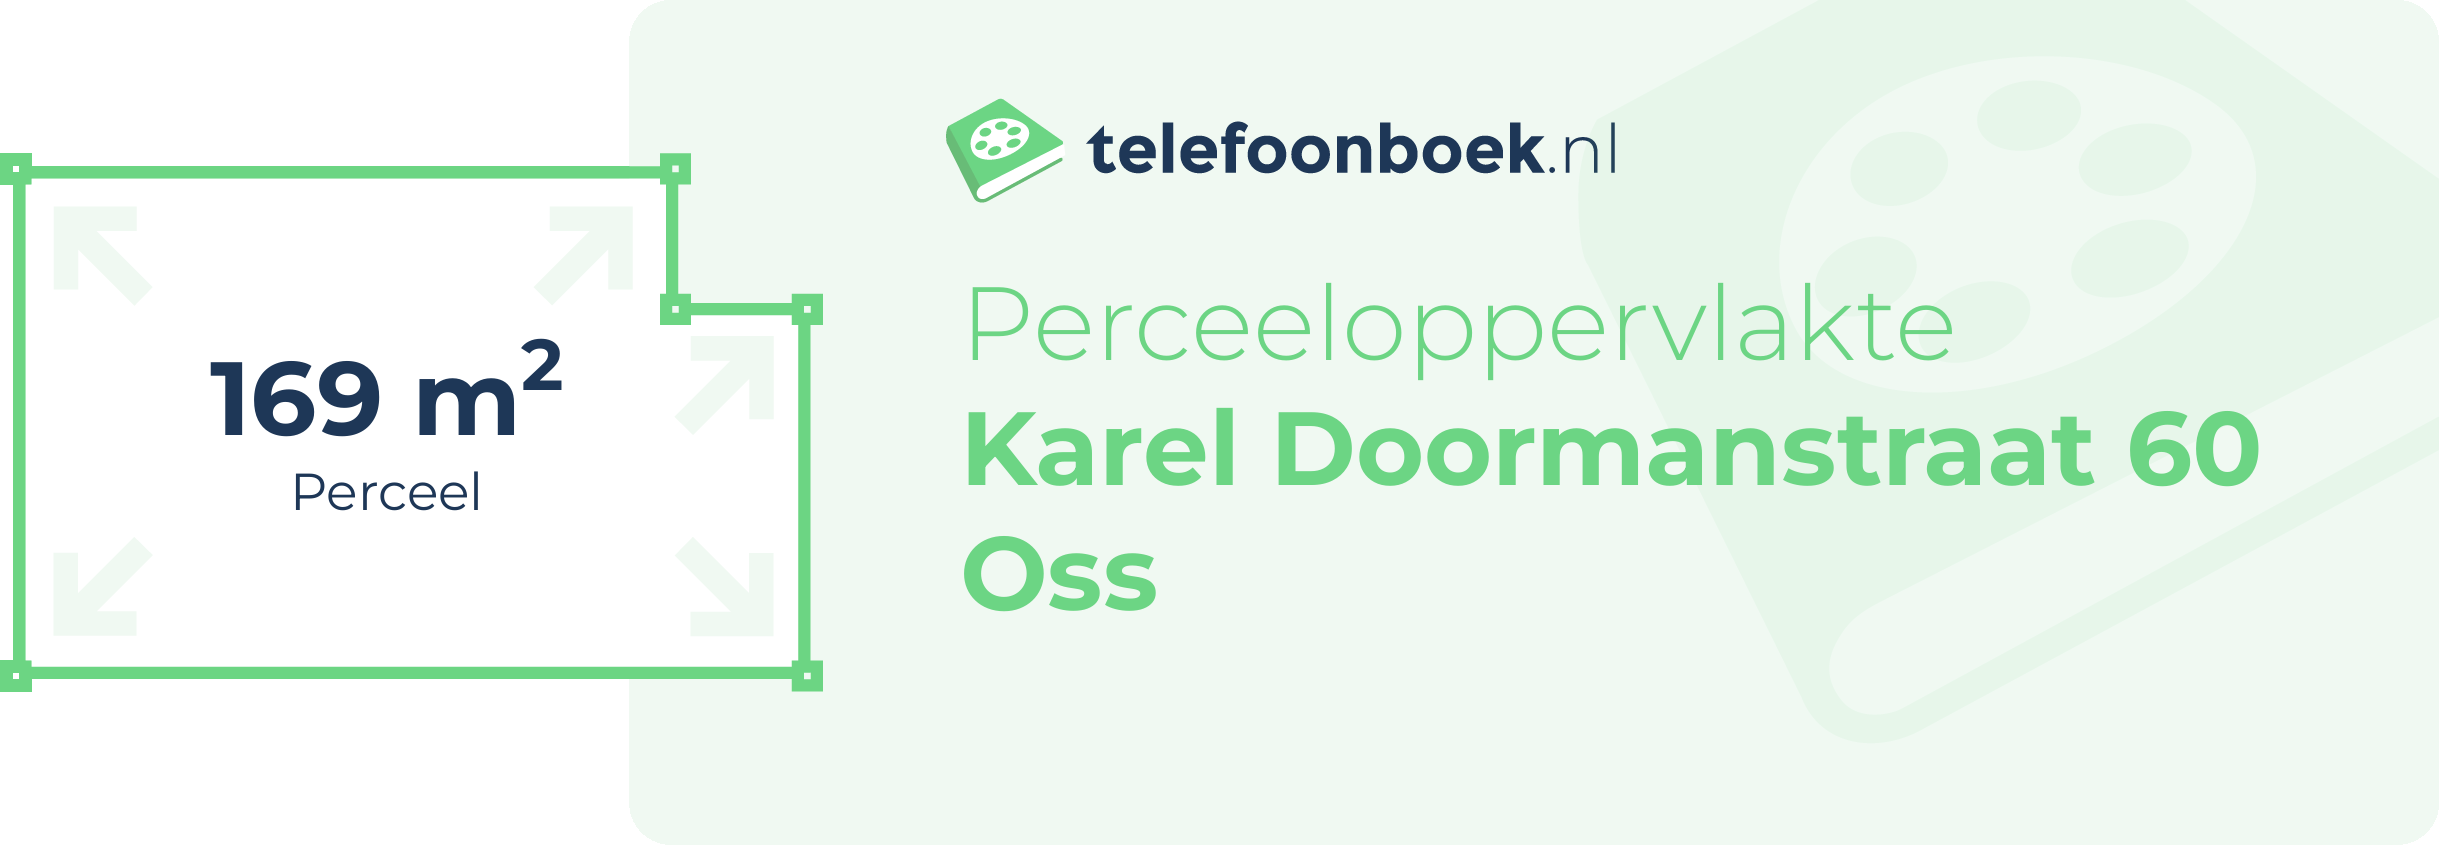 Perceeloppervlakte Karel Doormanstraat 60 Oss